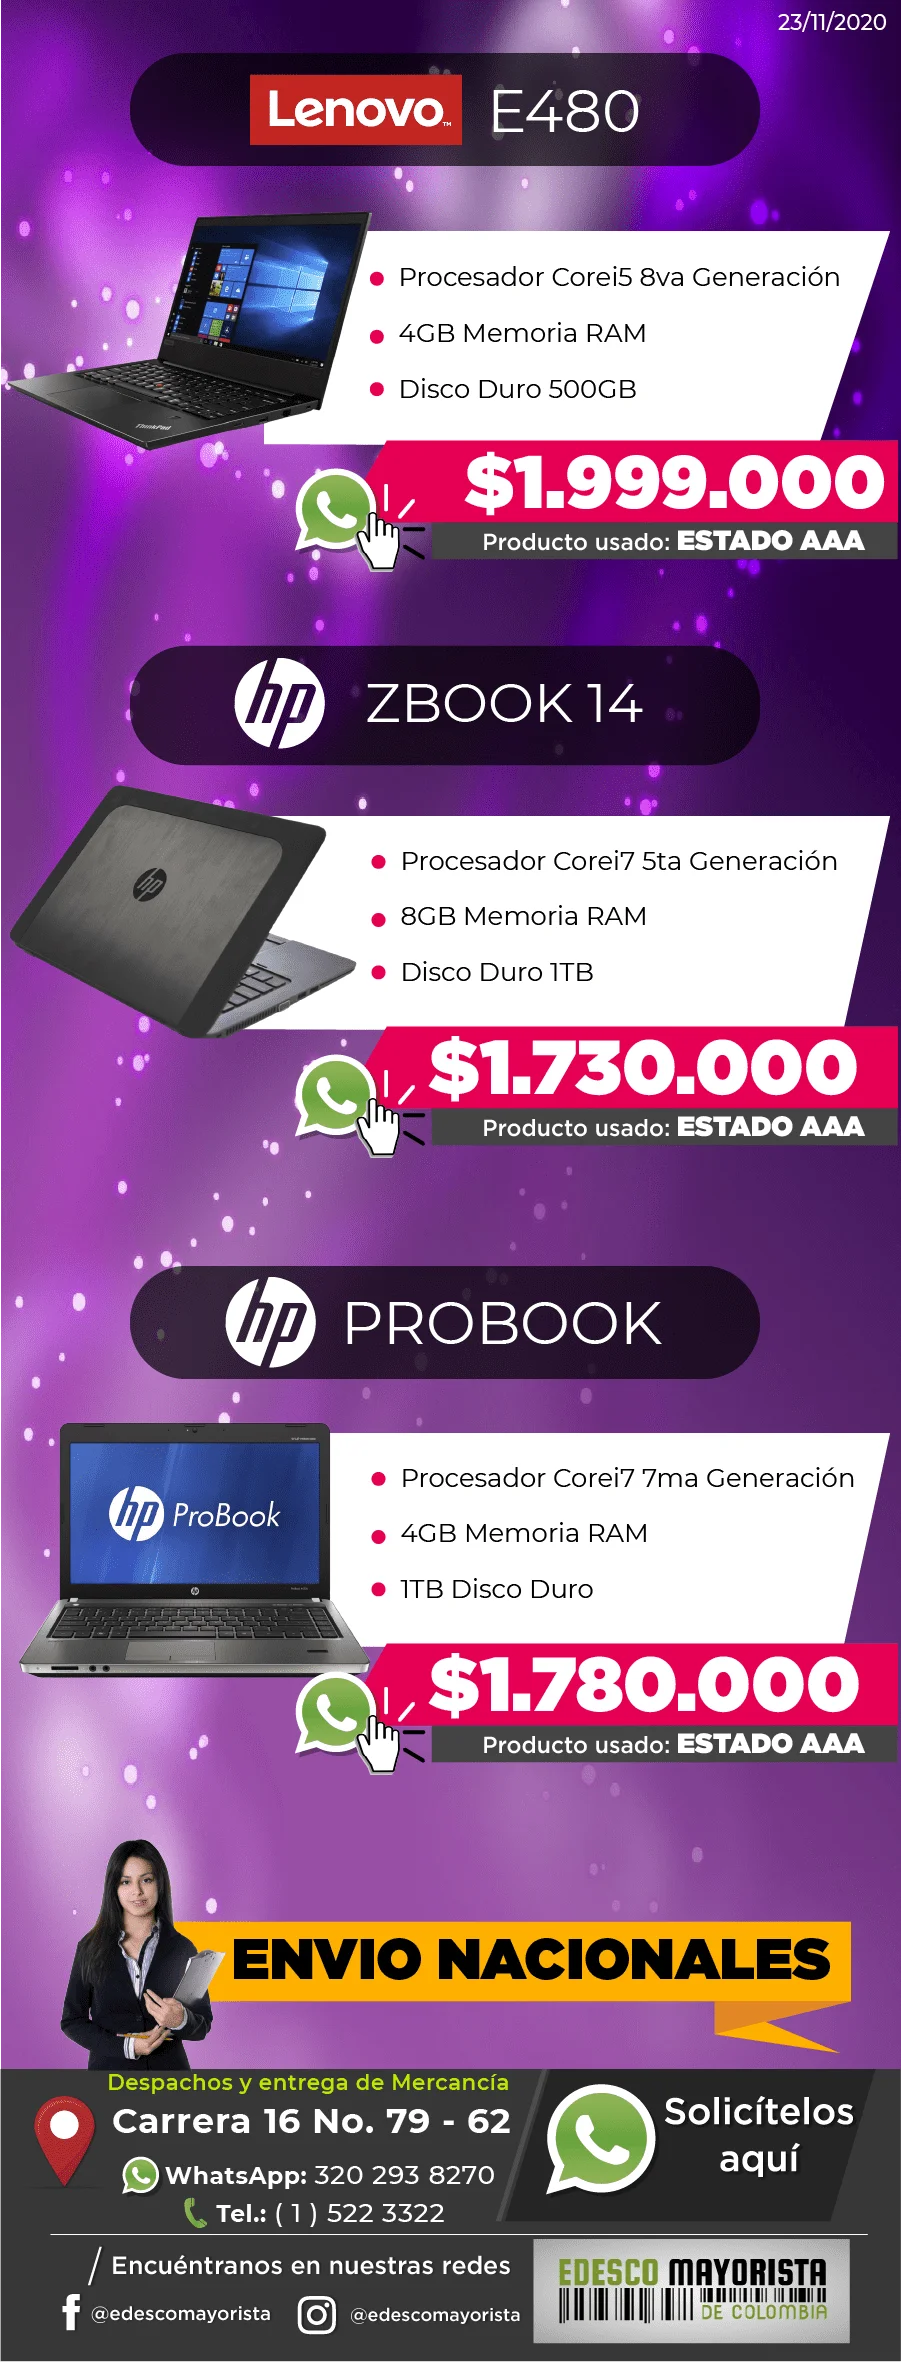 Lenovo E480 i5 - HP Zbook i7 - HP Probook